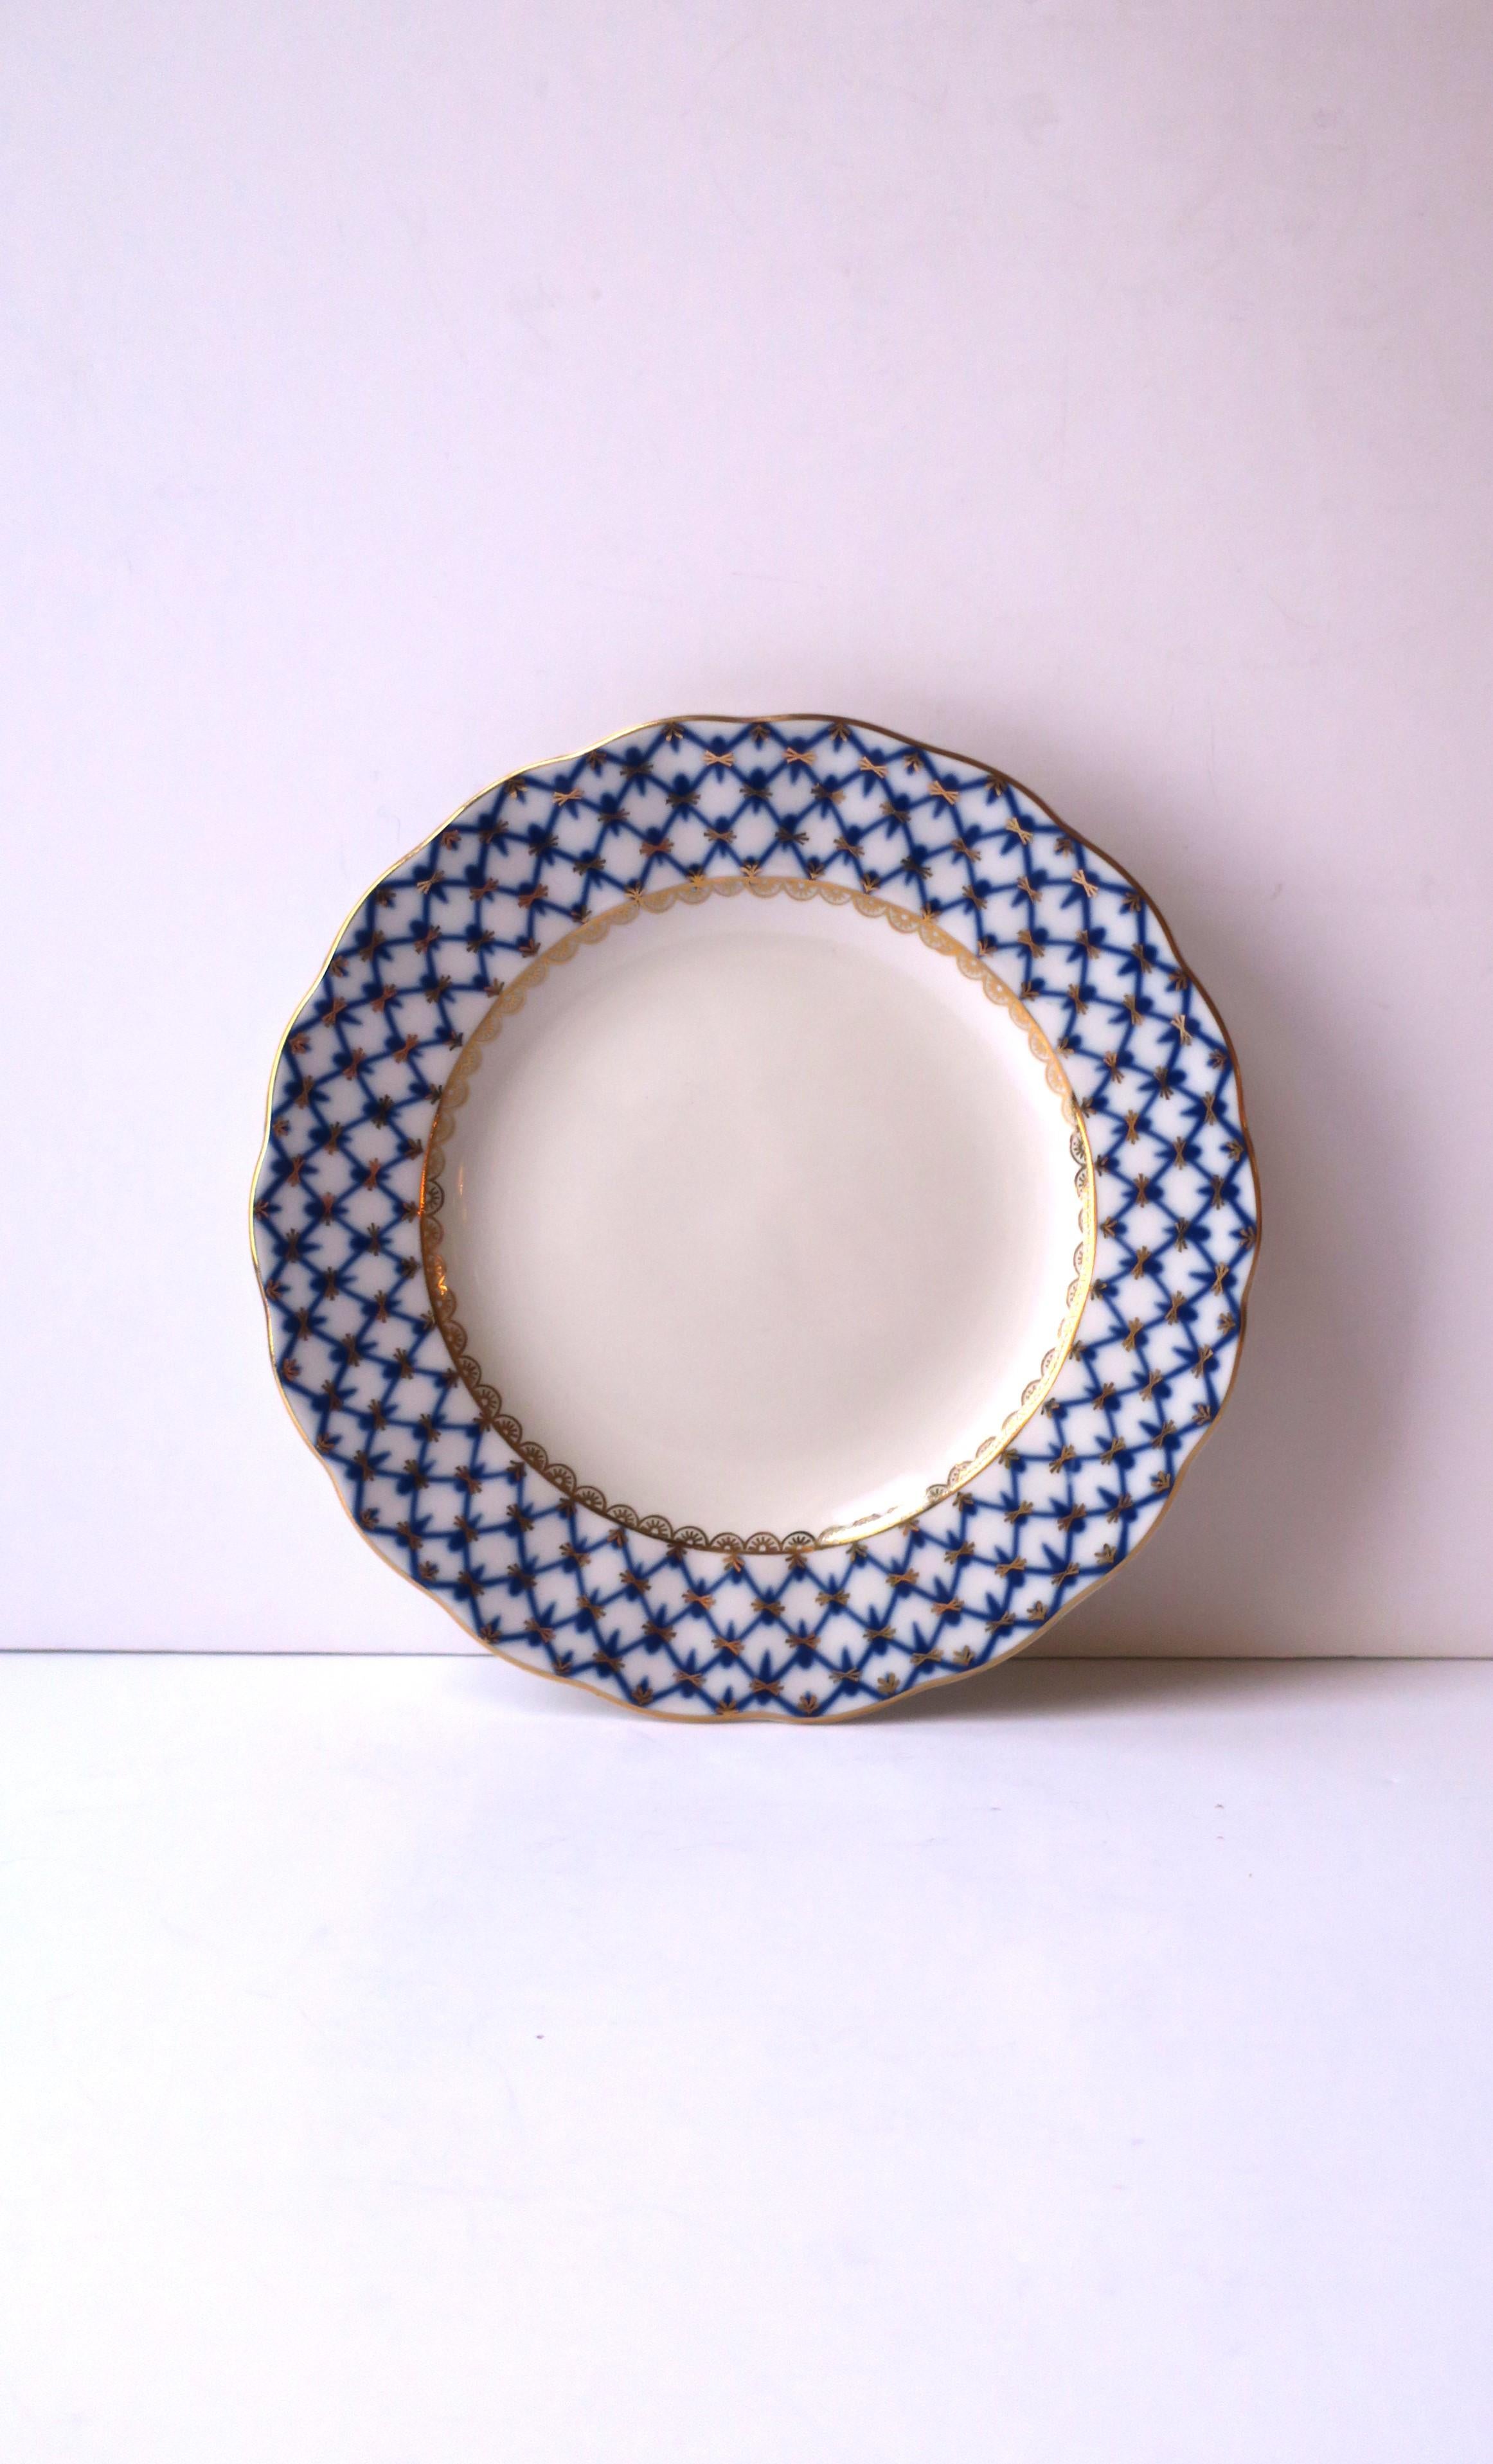 Schöner Teller aus russischem blauem, goldenem und weißem Porzellan mit dem Muster 